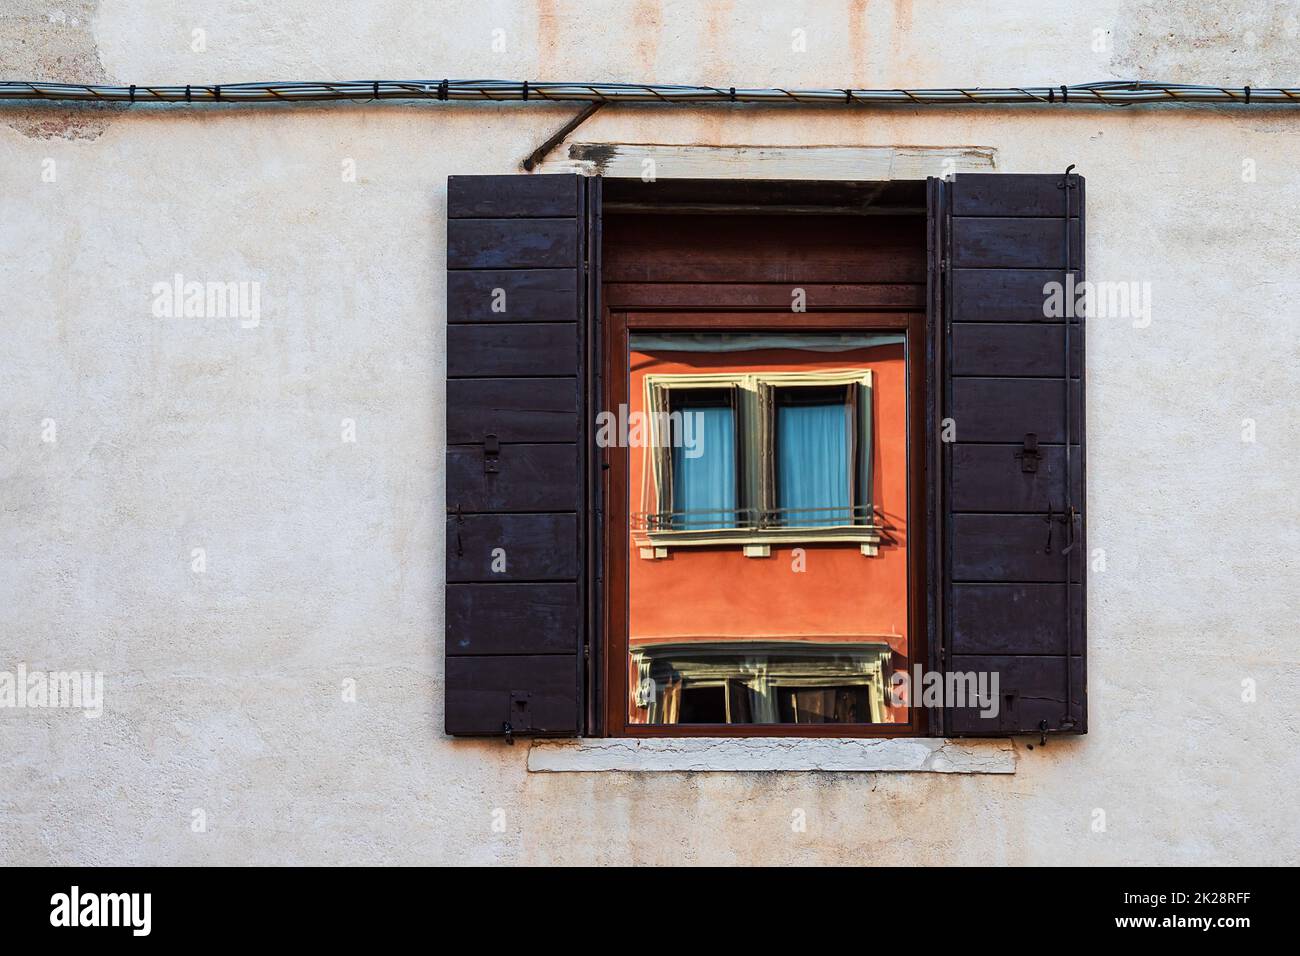 Miroir dans une fenêtre historique à Venise, Italie Banque D'Images